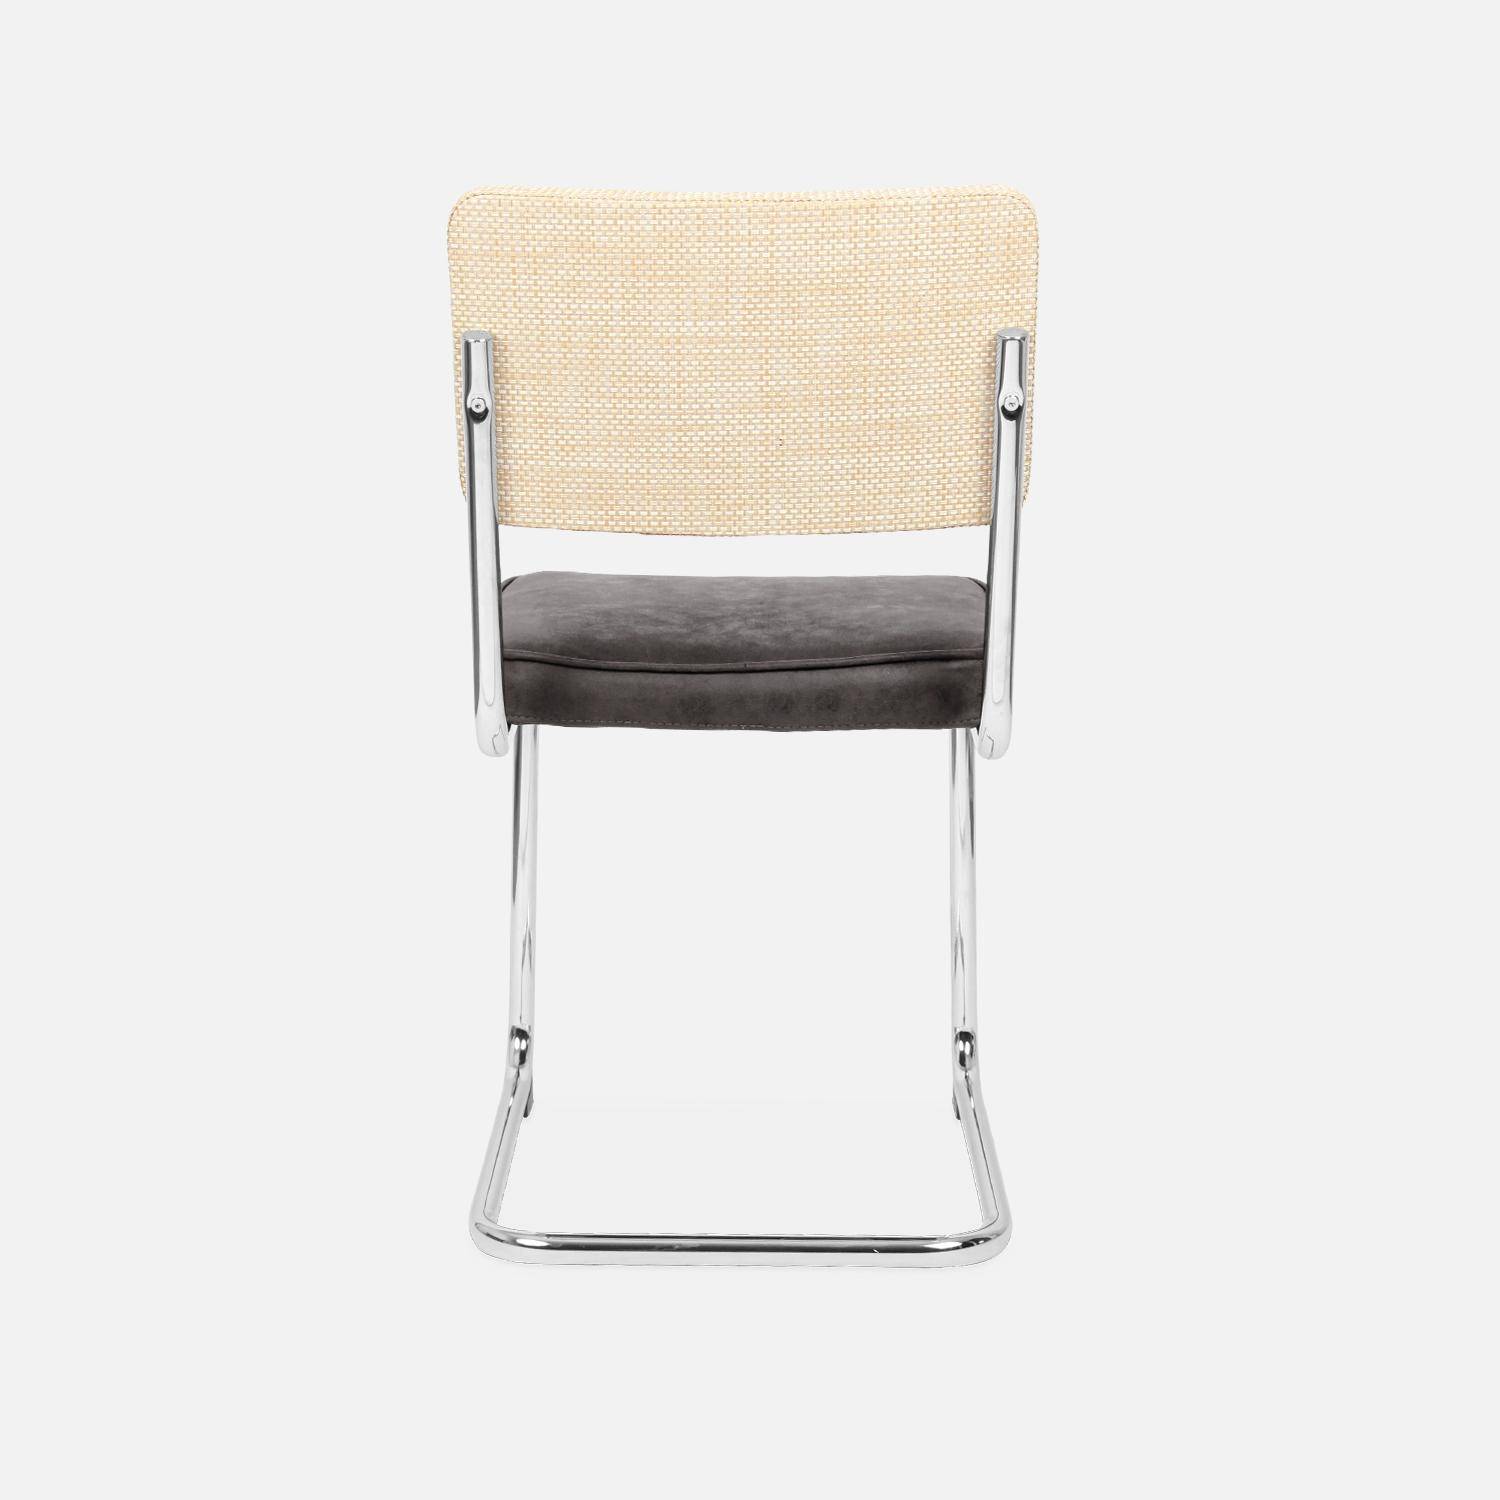 2 chaises cantilever - Maja - tissu noir et résine effet rotin, 46 x 54,5 x 84,5cm   Photo7